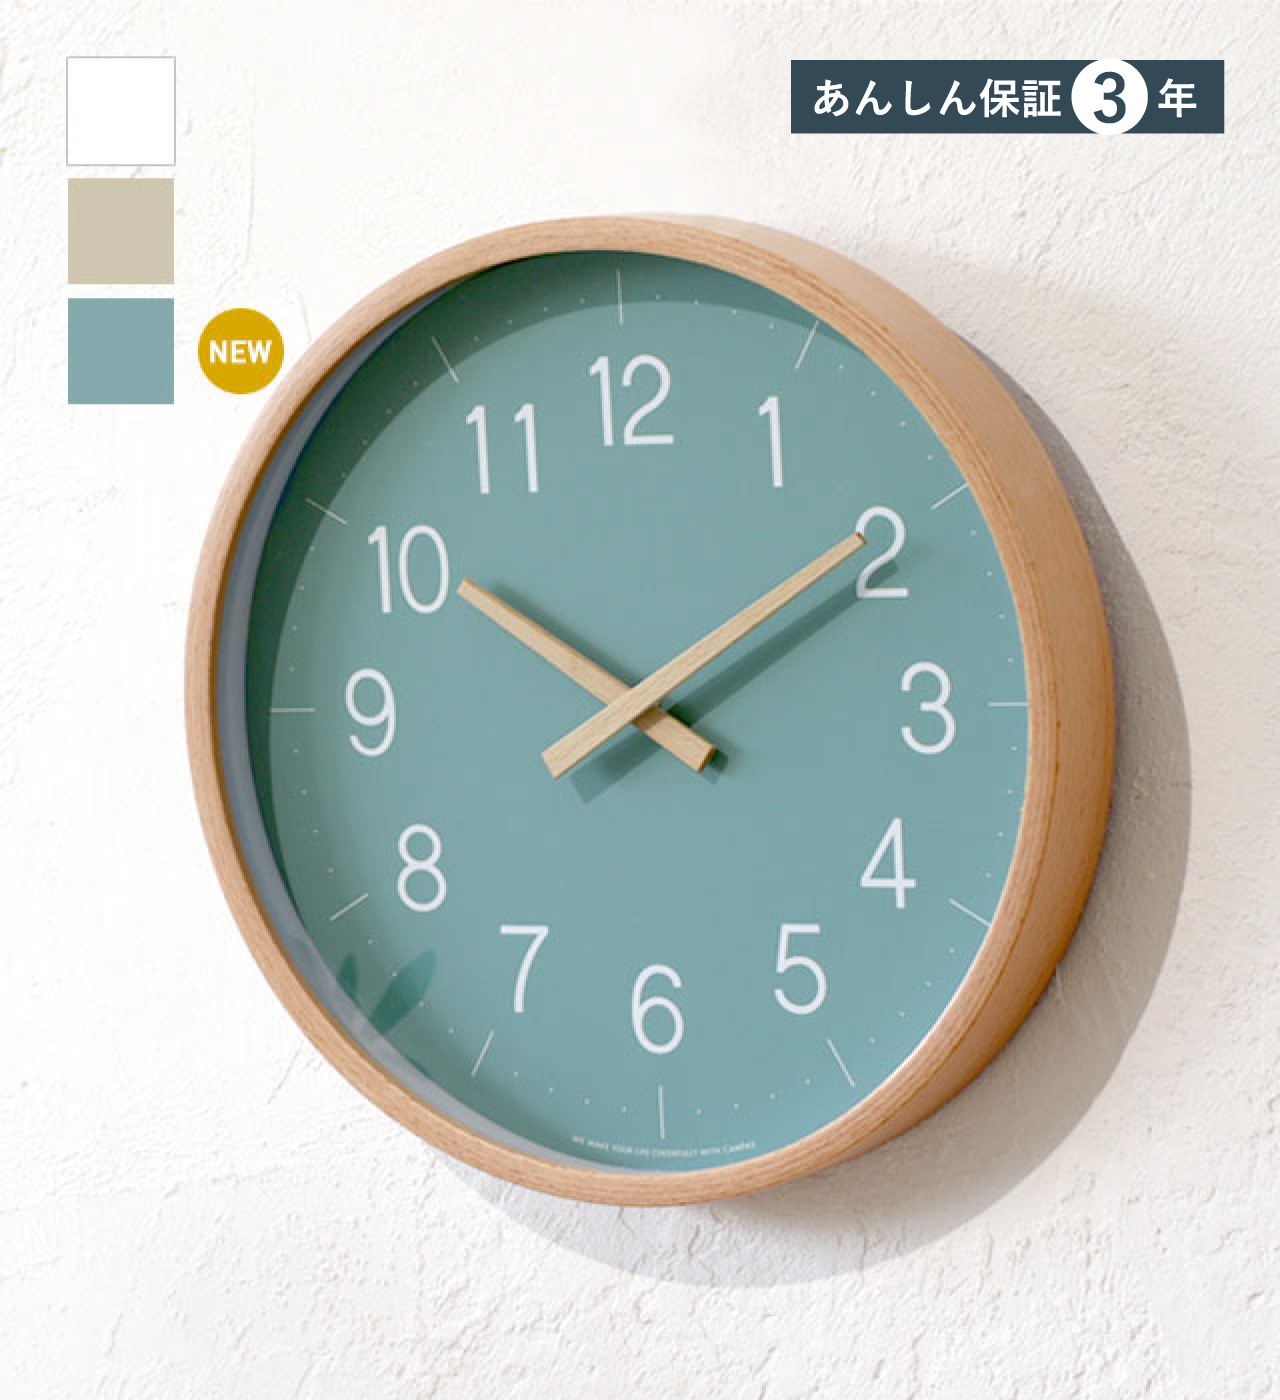 【OTHER】ウォールクロック Sサイズ 3色 CAMPAS / キャンパス 掛け時計 時計